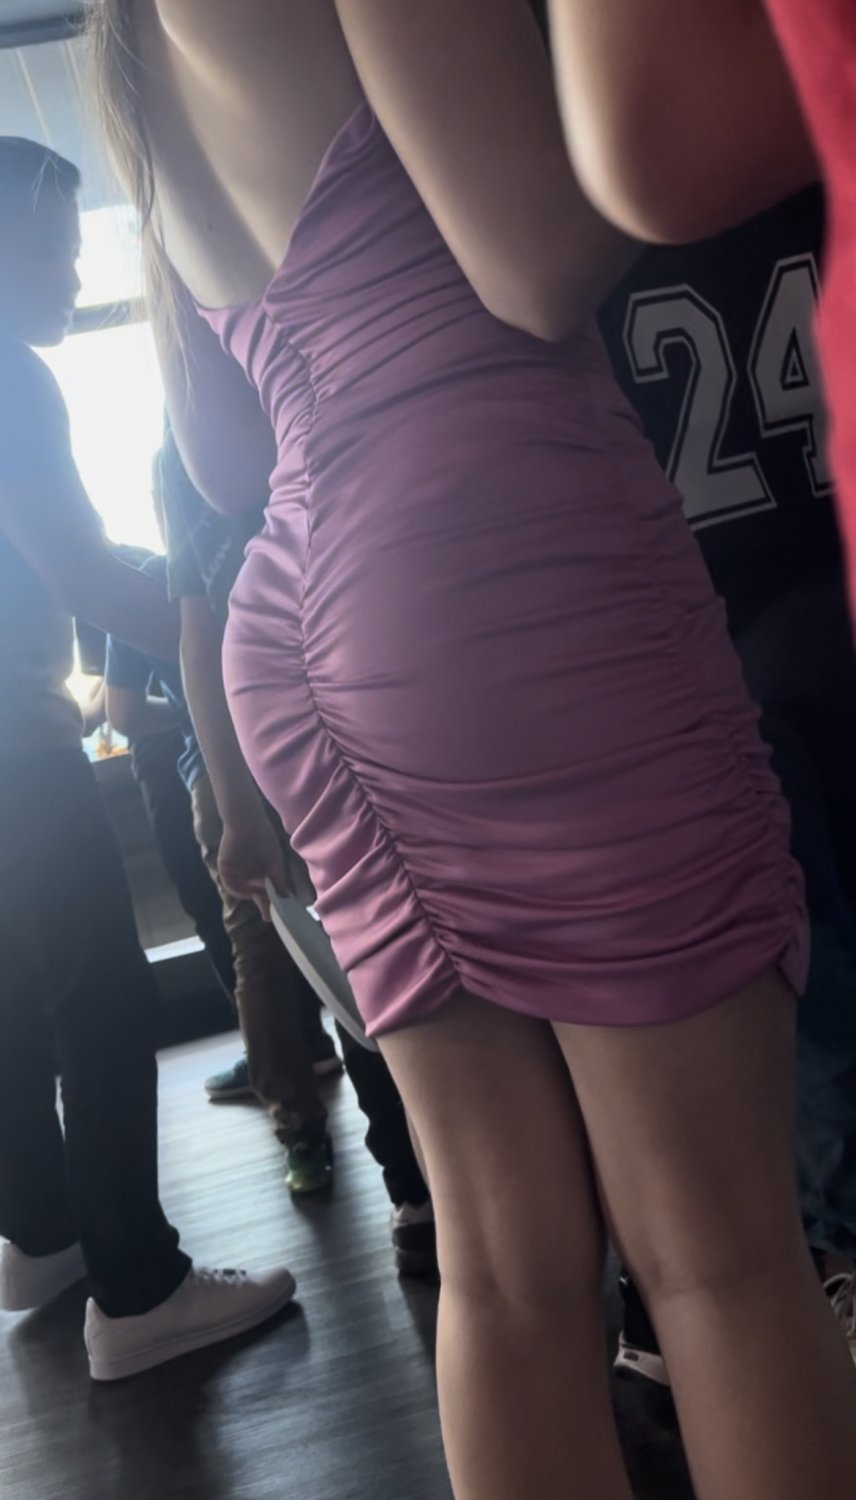 Tight Dress - Hot teen ass tight dress - Porn Videos & Photos - EroMe